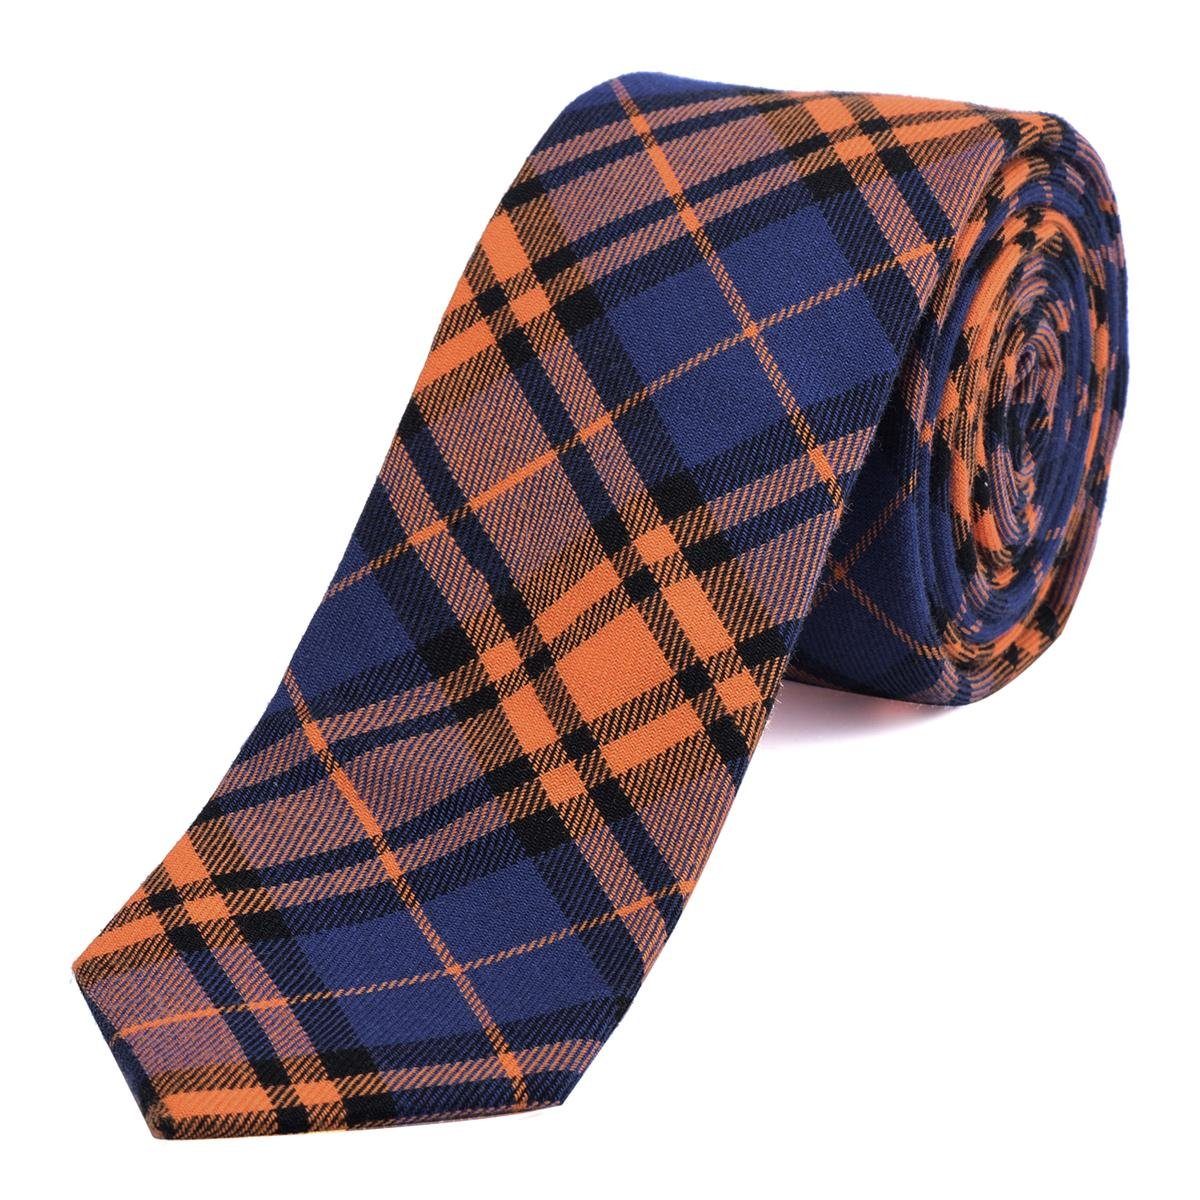 DonDon Krawatte Herren Krawatte 6 cm mit Karos oder Streifen (Packung, 1-St., 1x Krawatte) Baumwolle, kariert oder gestreift, für Büro oder festliche Veranstaltungen orange-dunkelblau